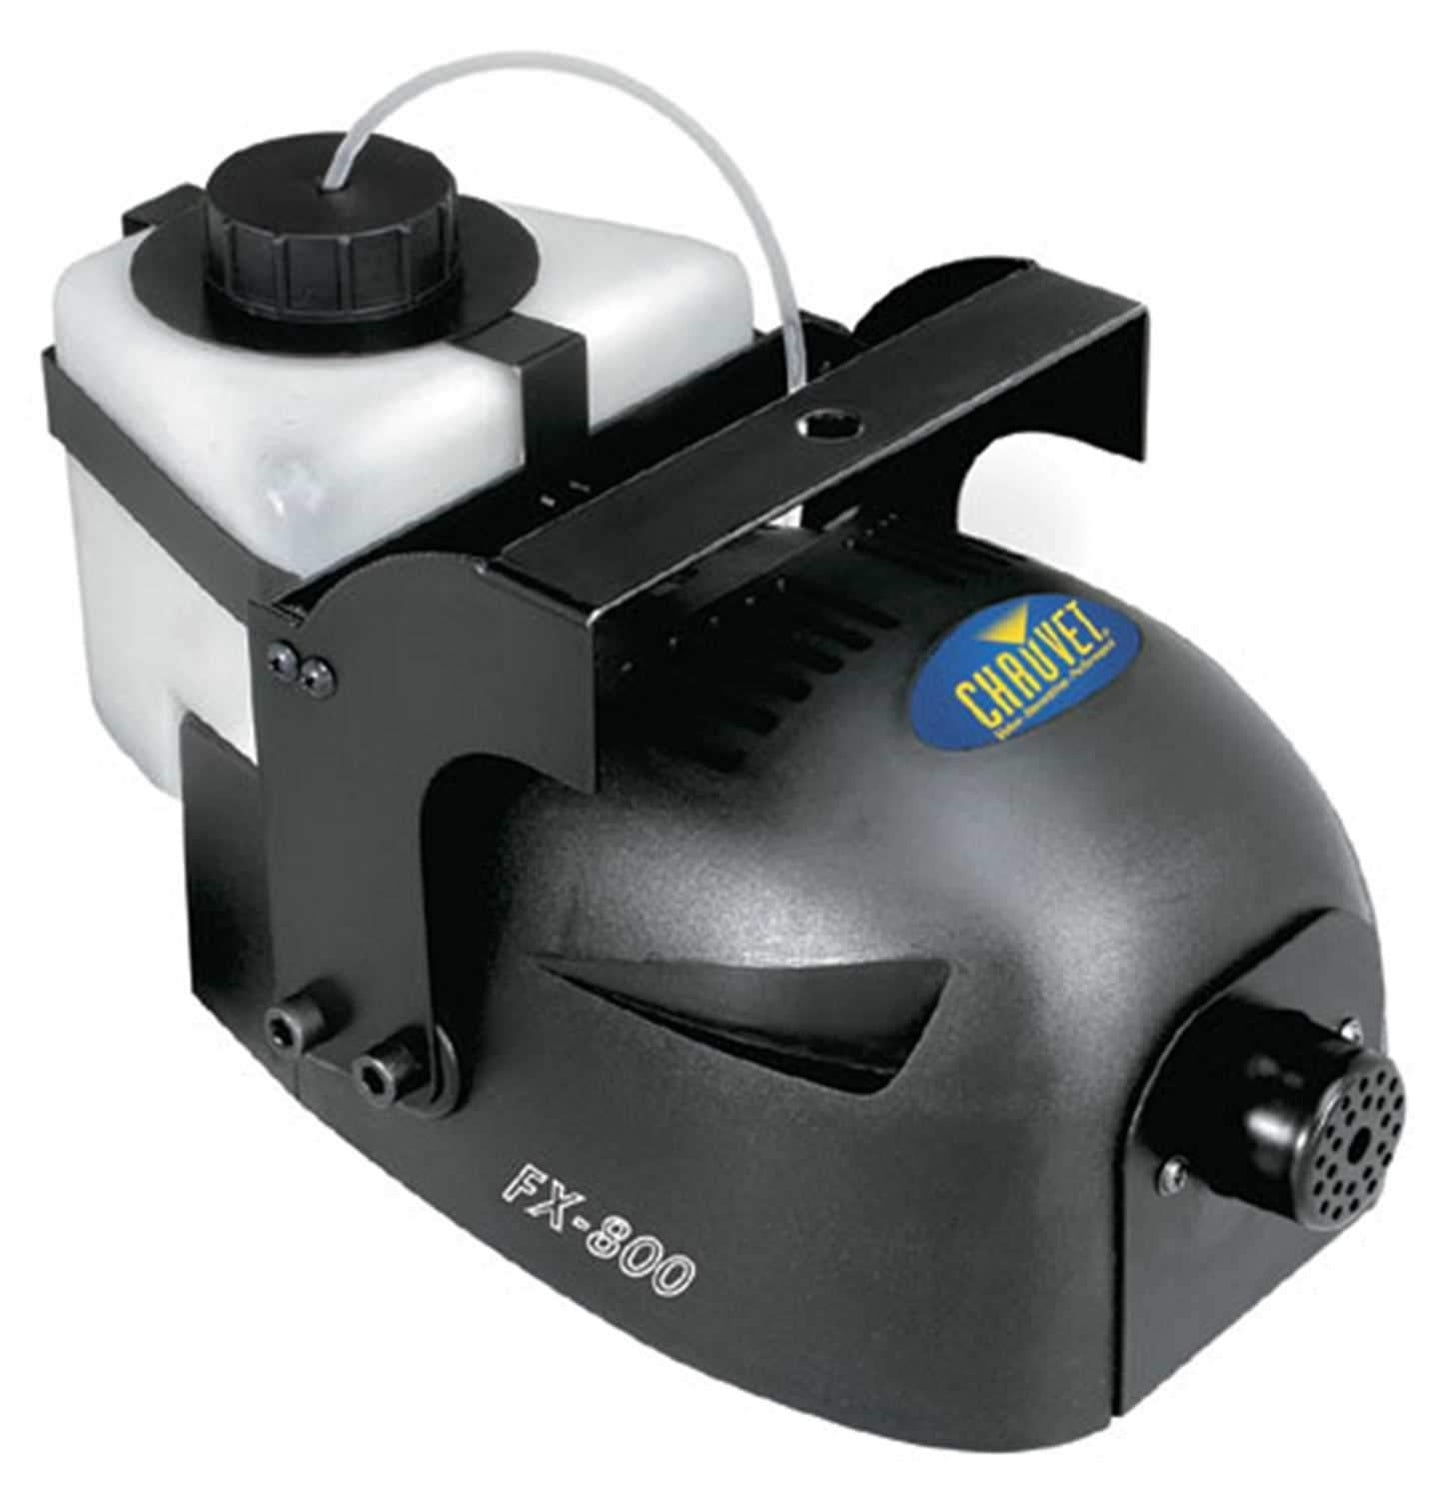 Chauvet FX800 700 Watt Fog Machine with Wired Remote - ProSound and Stage Lighting